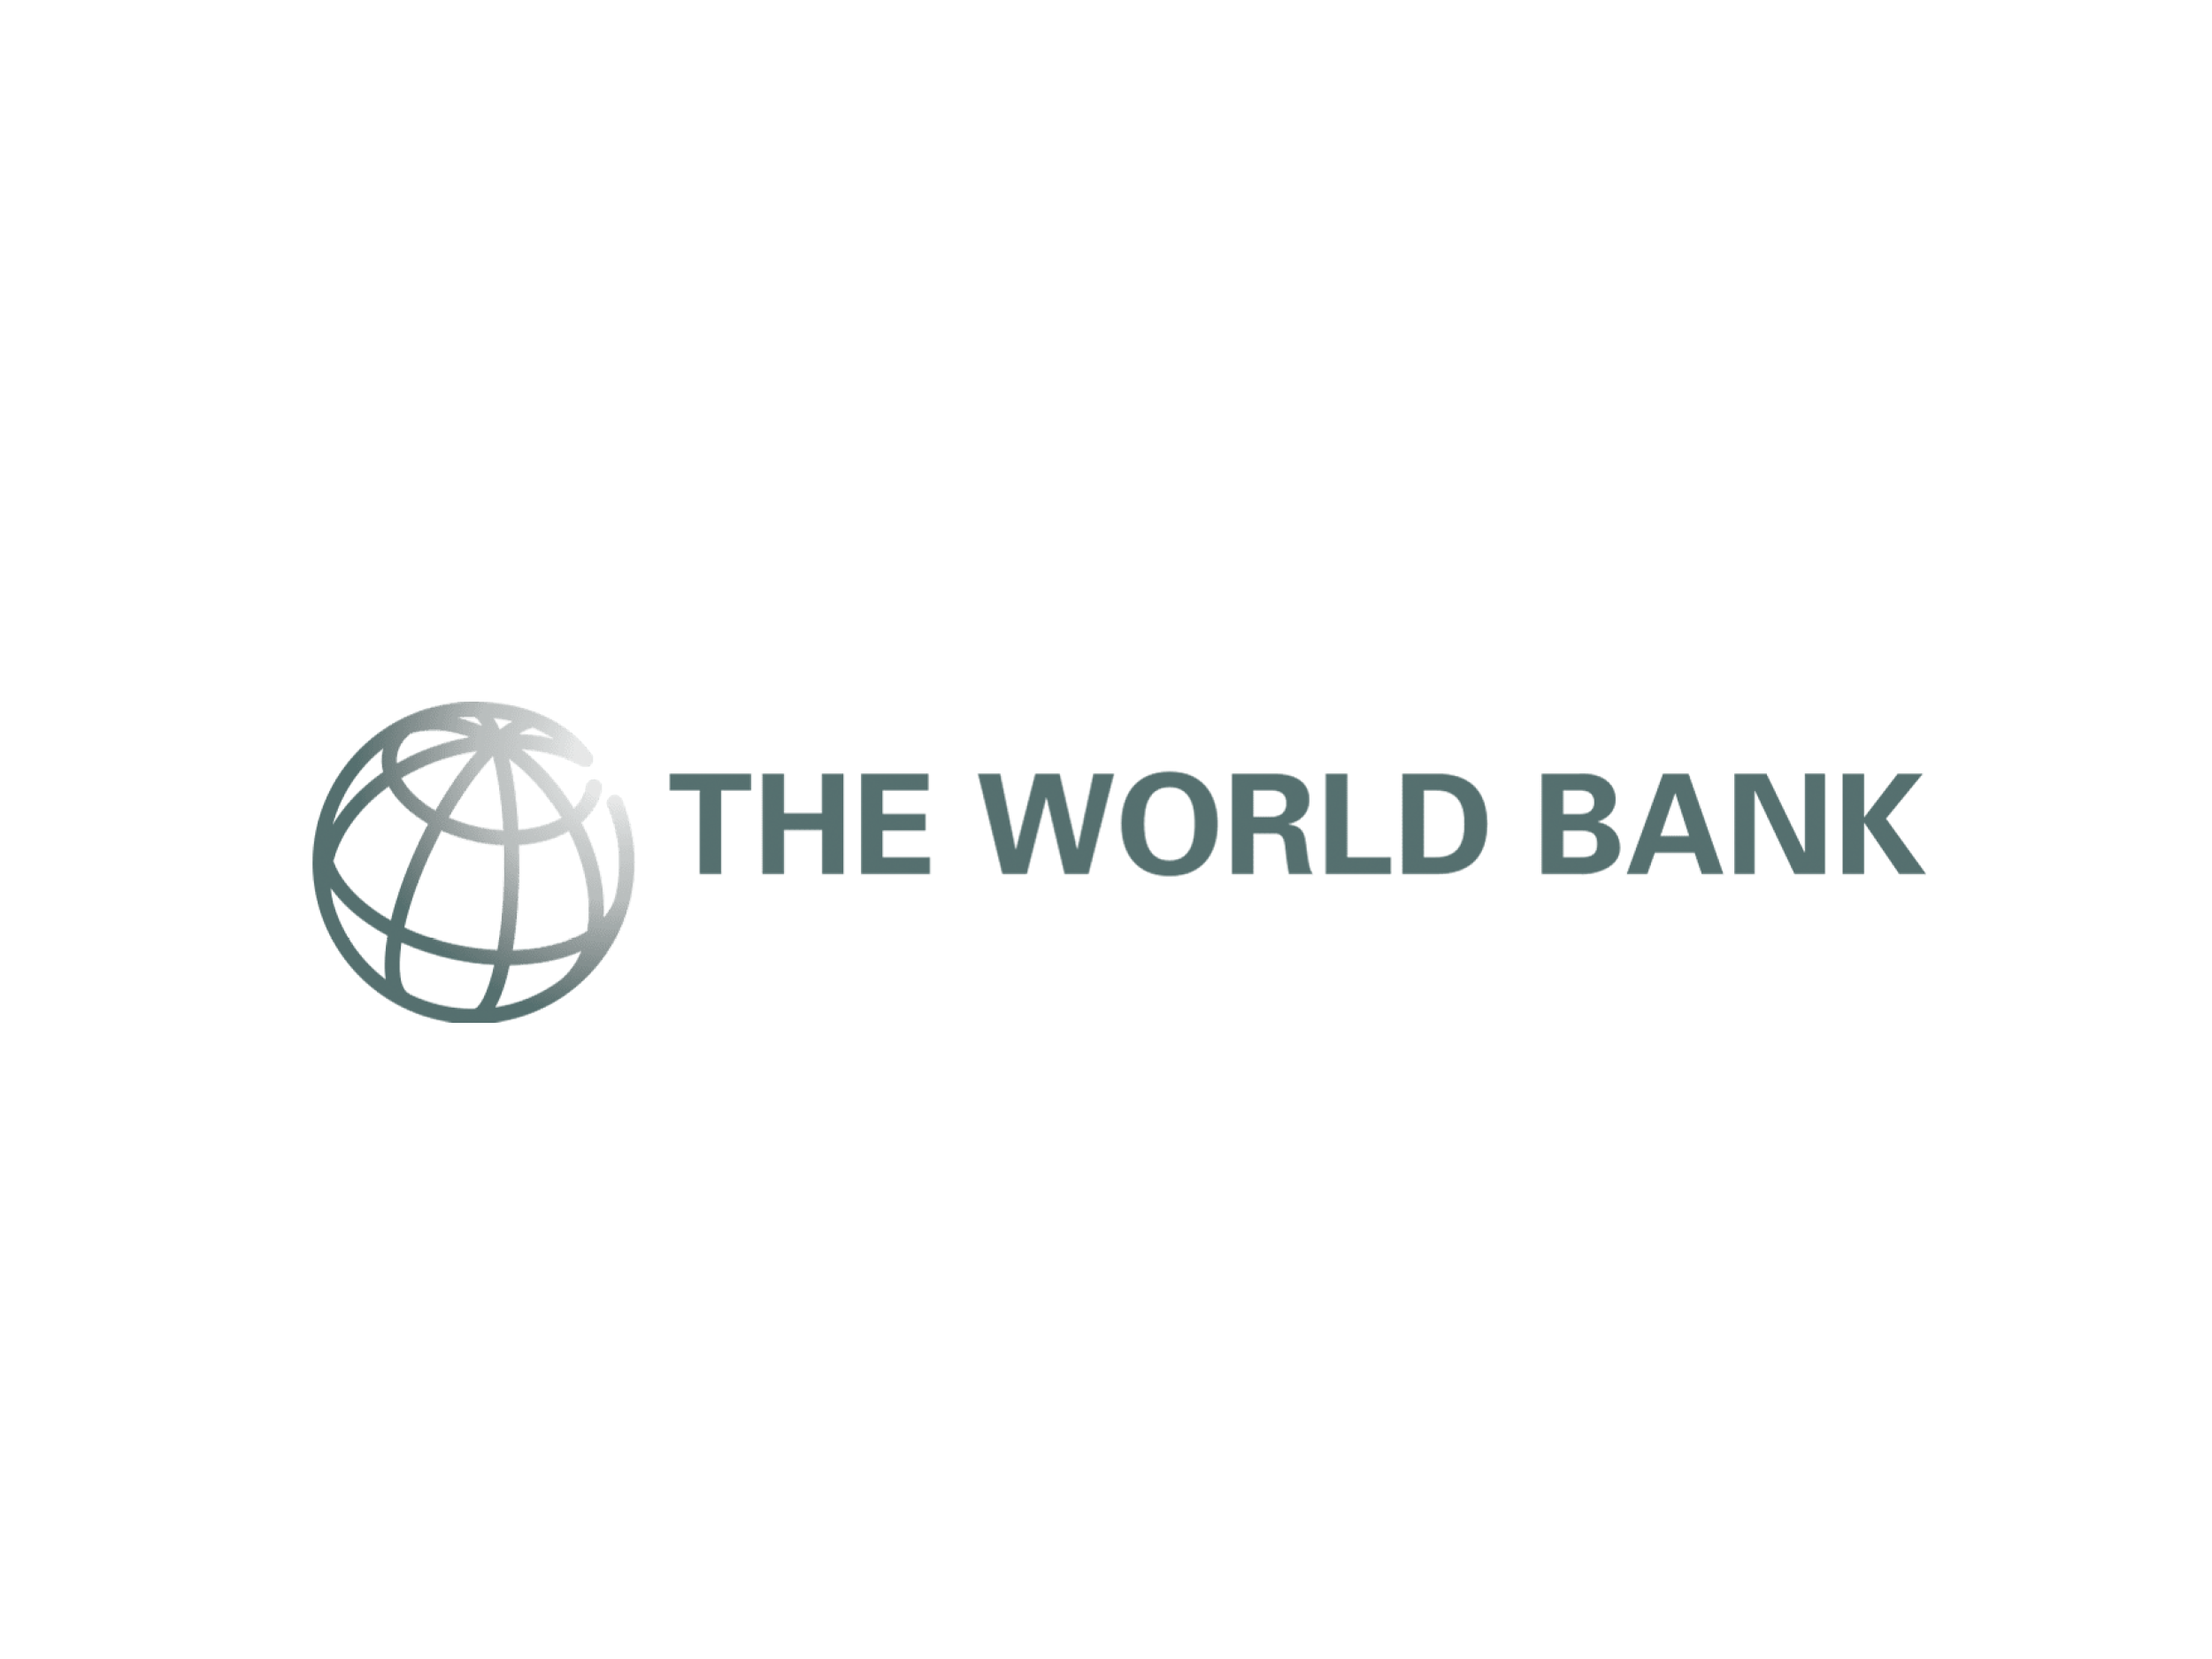 Фонд всемирный банк. Всемирный банк. Лого Всемирного банка. World Bank логотип. Всемирный банк (мировой банк).